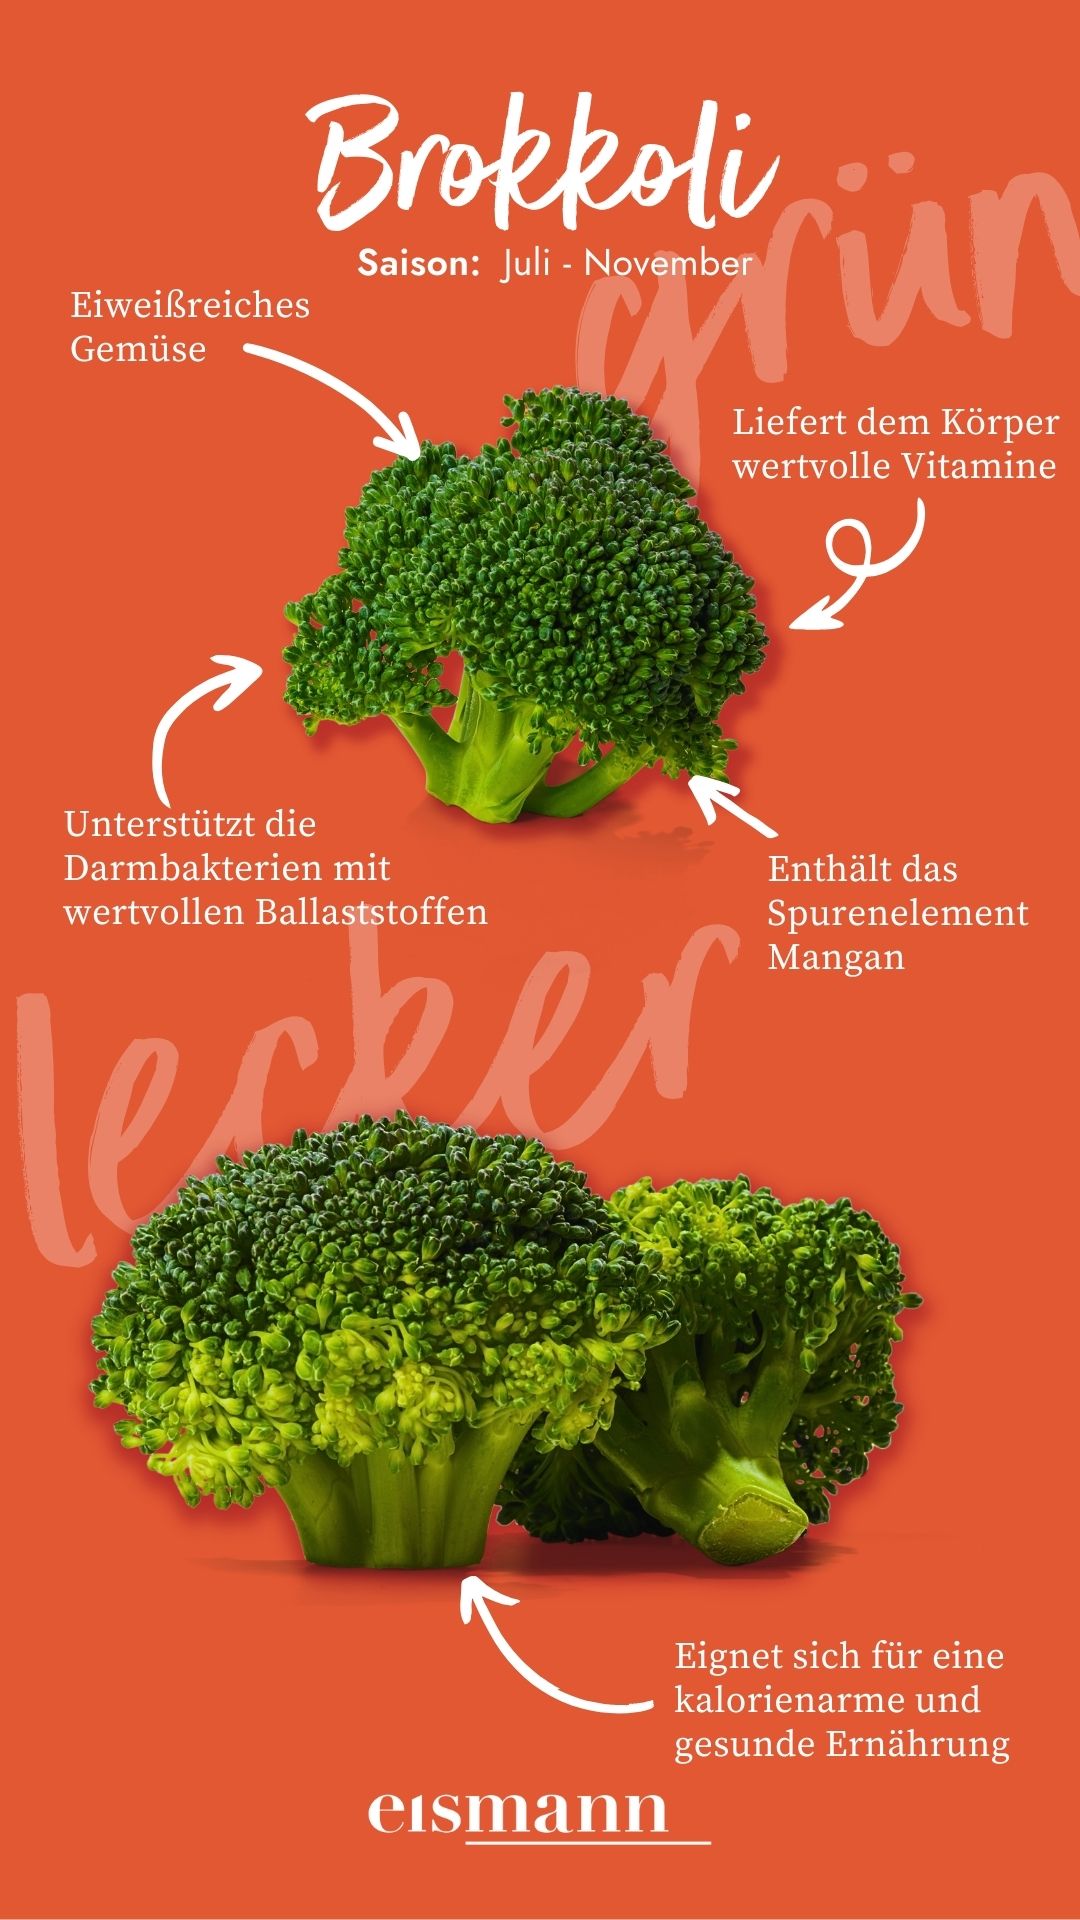 Brokkoli - Eigenschaften, Saison und Vorteile in der Ernährung